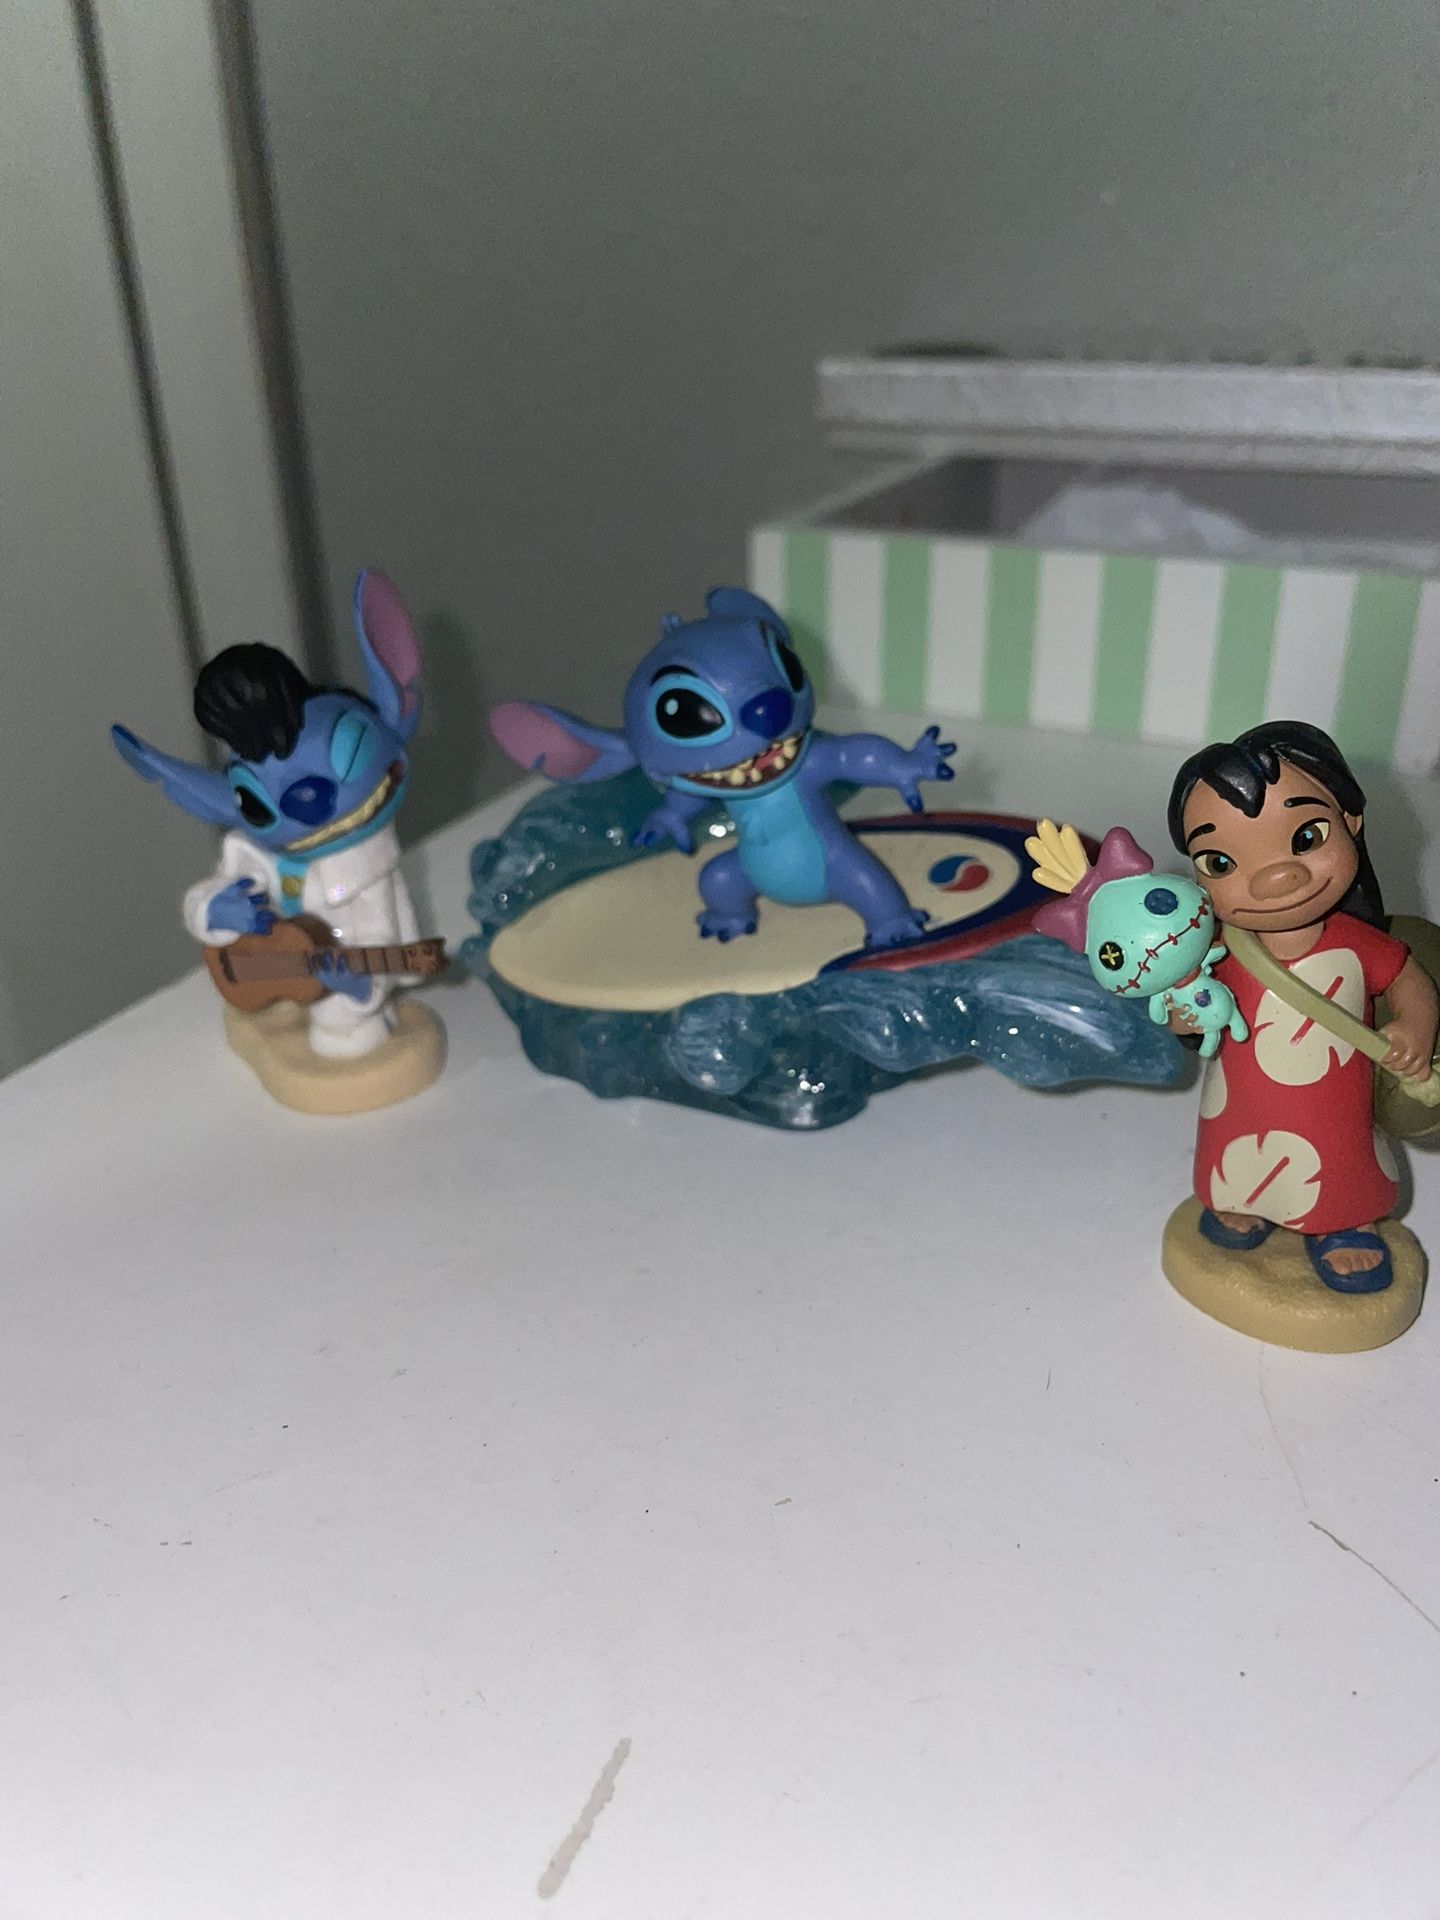 Lilo & Stitch Figurines 